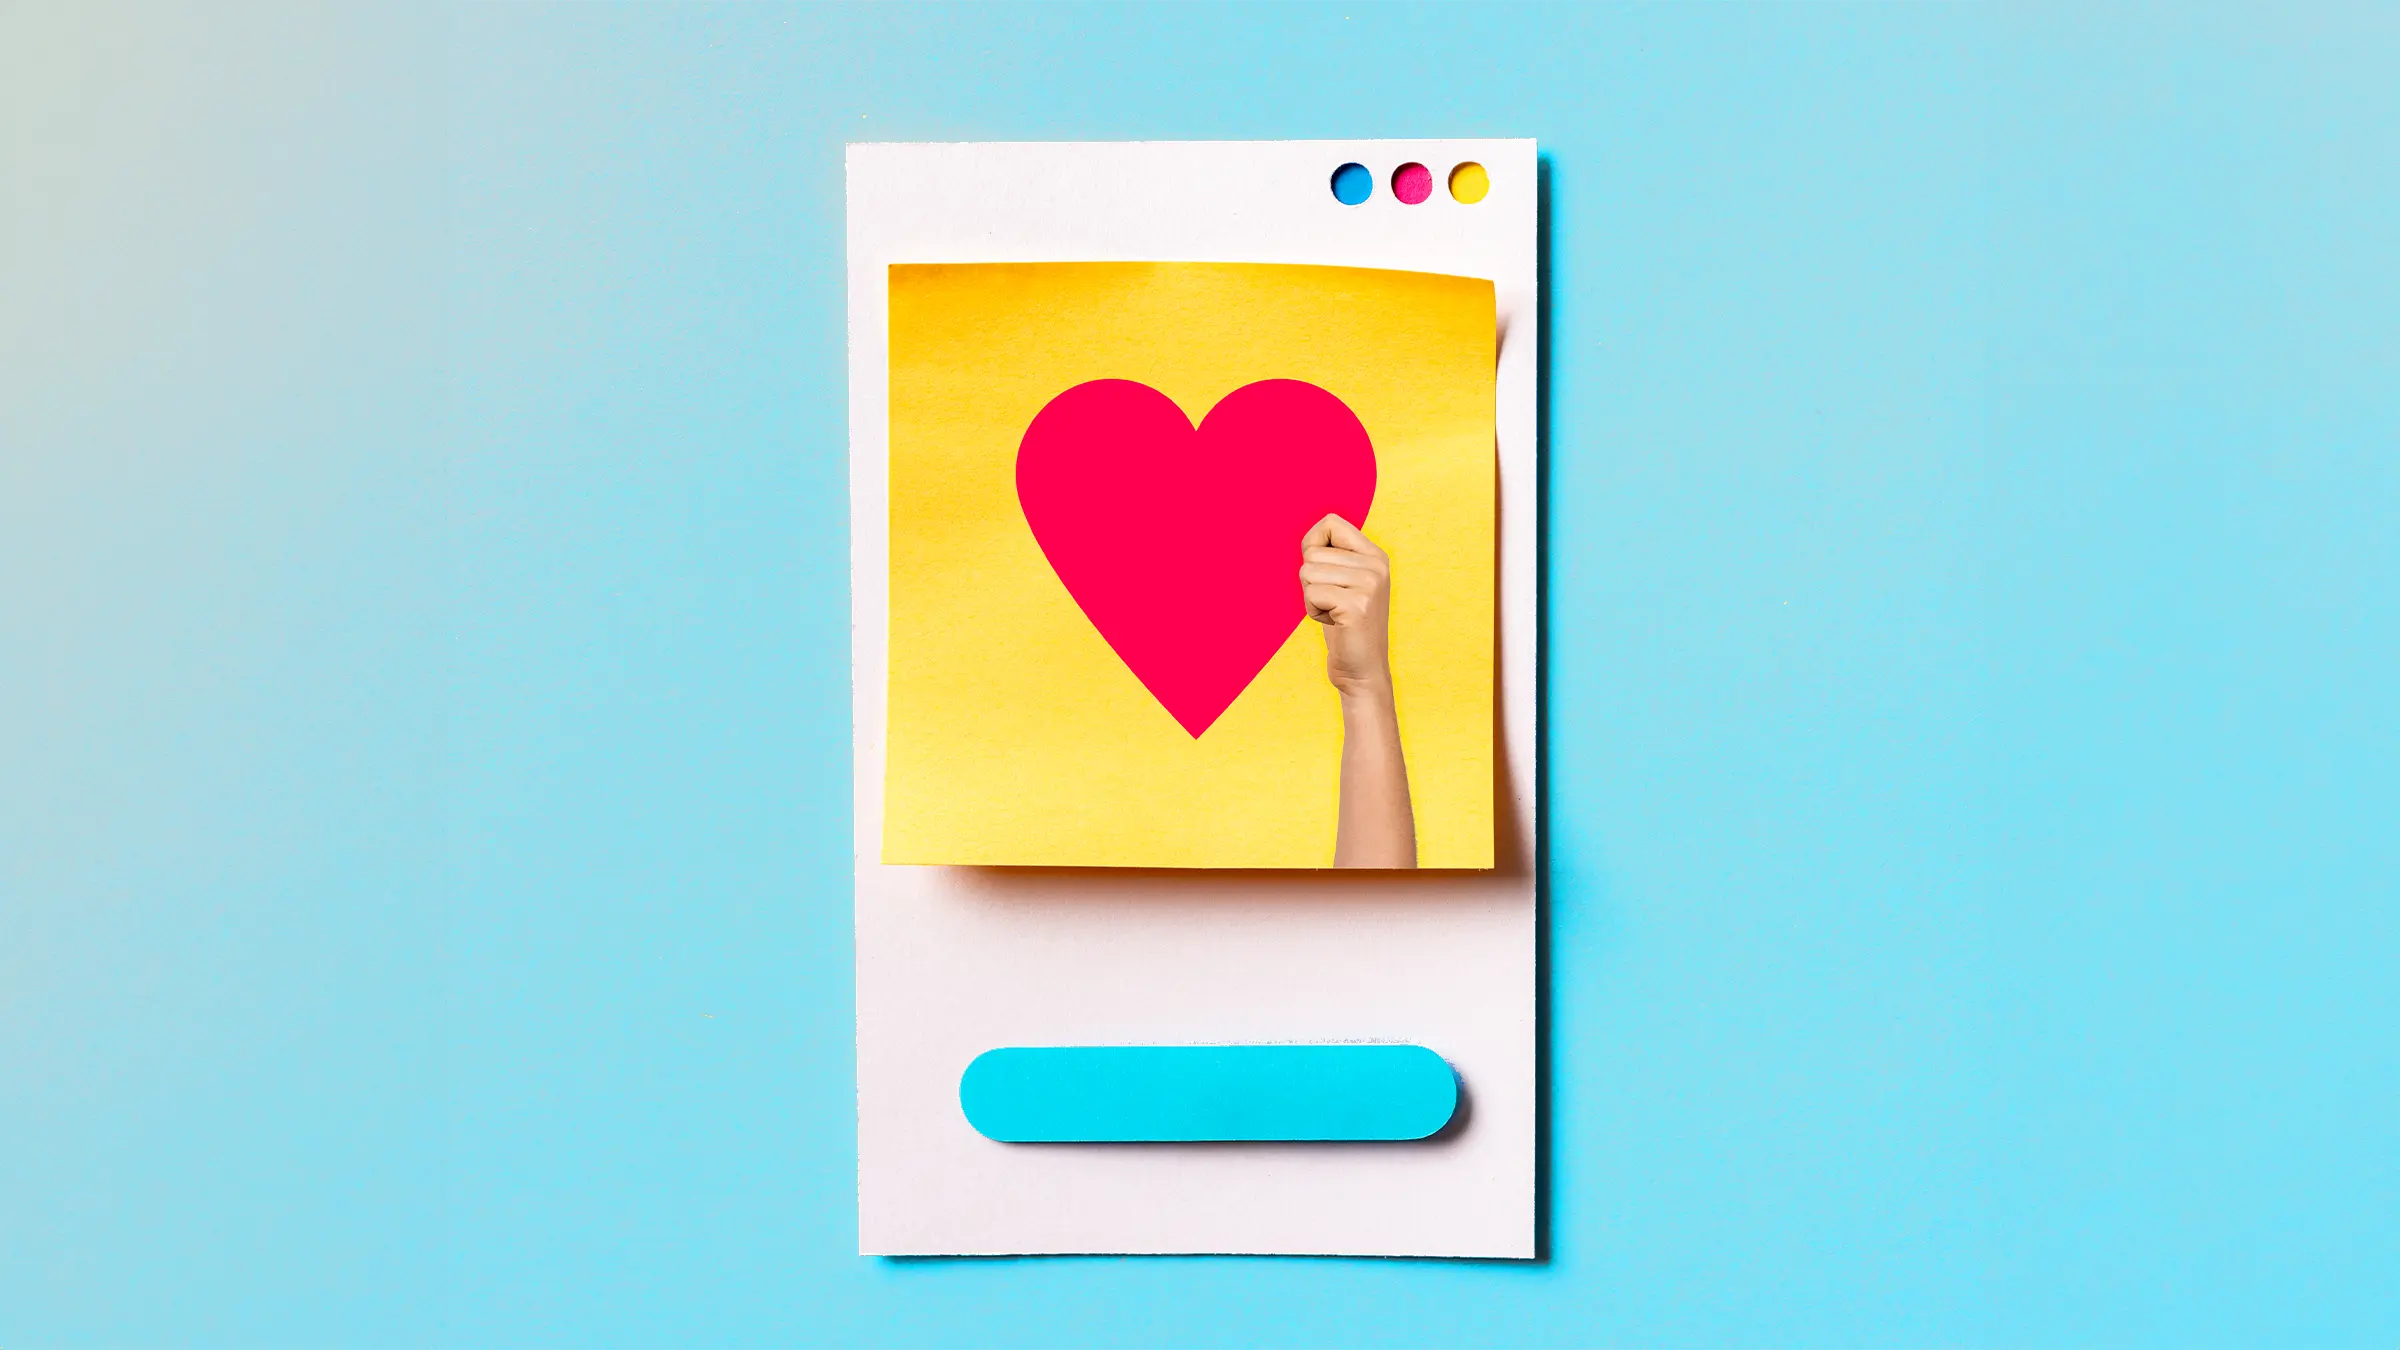 Papier-Imitat eines Social-Media-Postings auf einem Smartphone, auf dem eine Hand ein rotes Herz nach oben hält